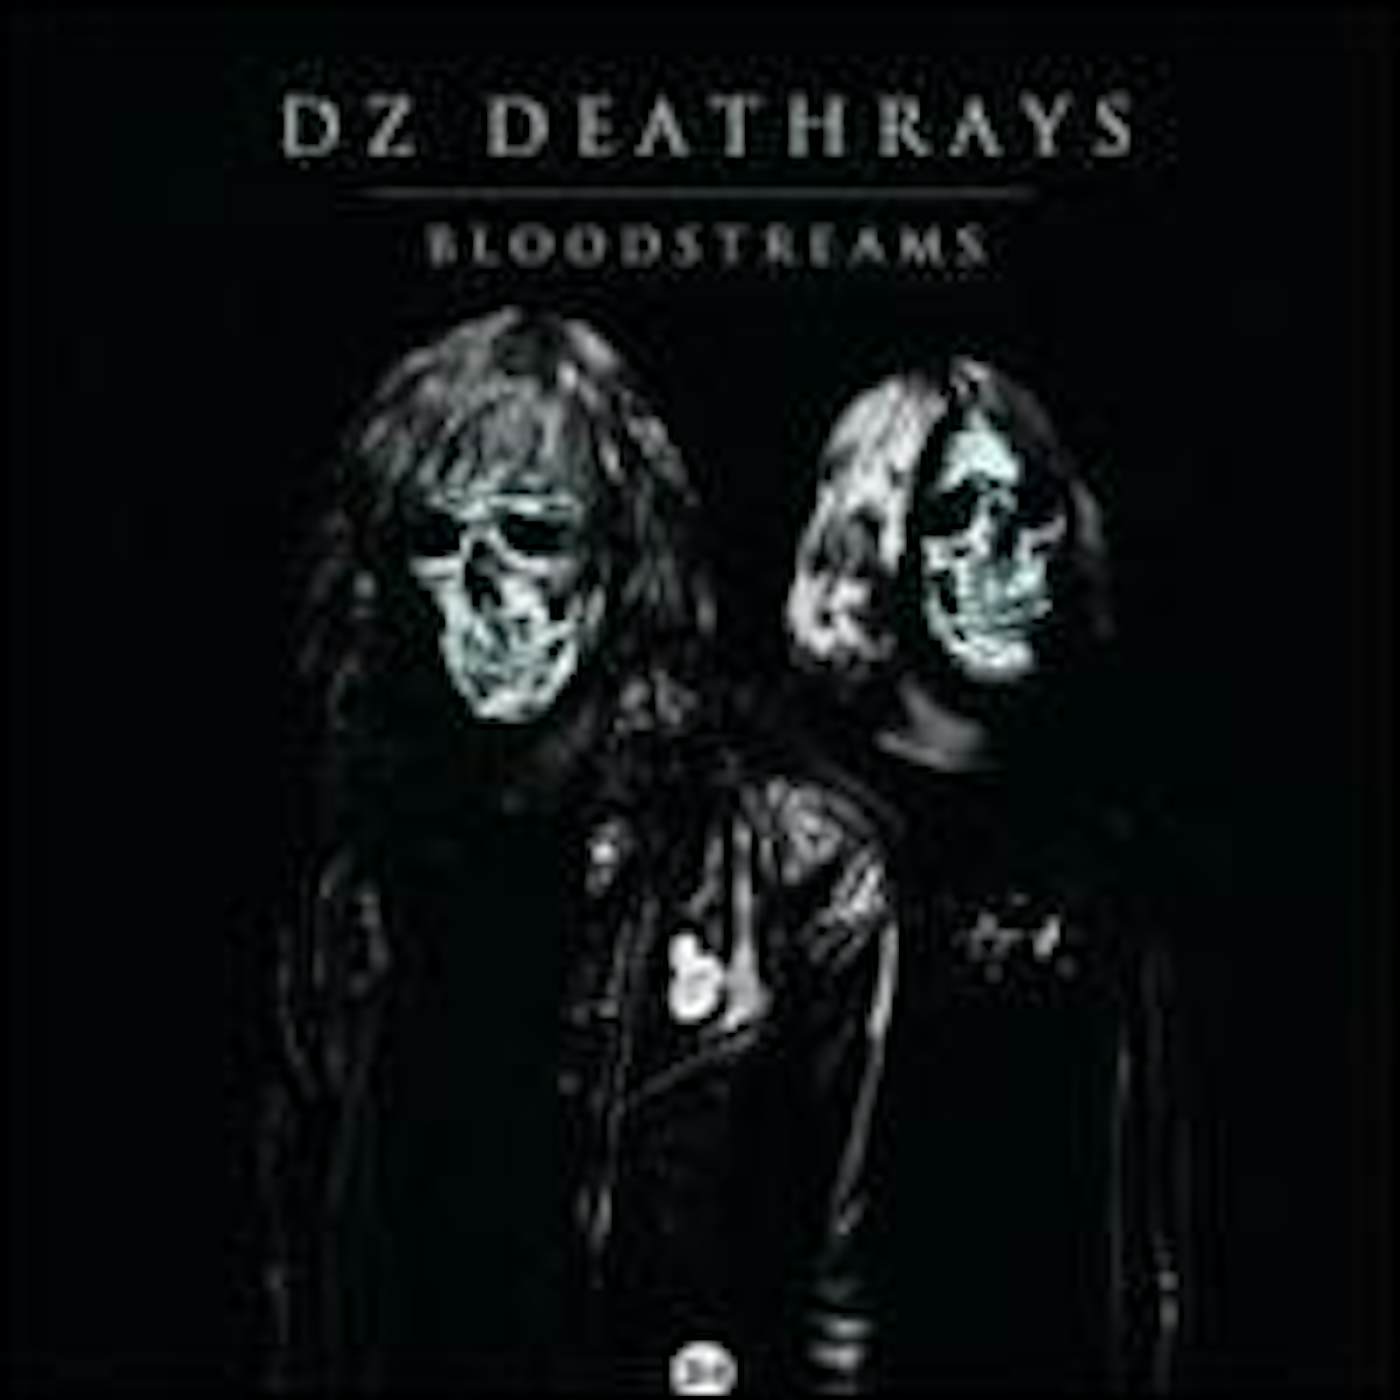 DZ Deathrays BLOODSTREAMS CD